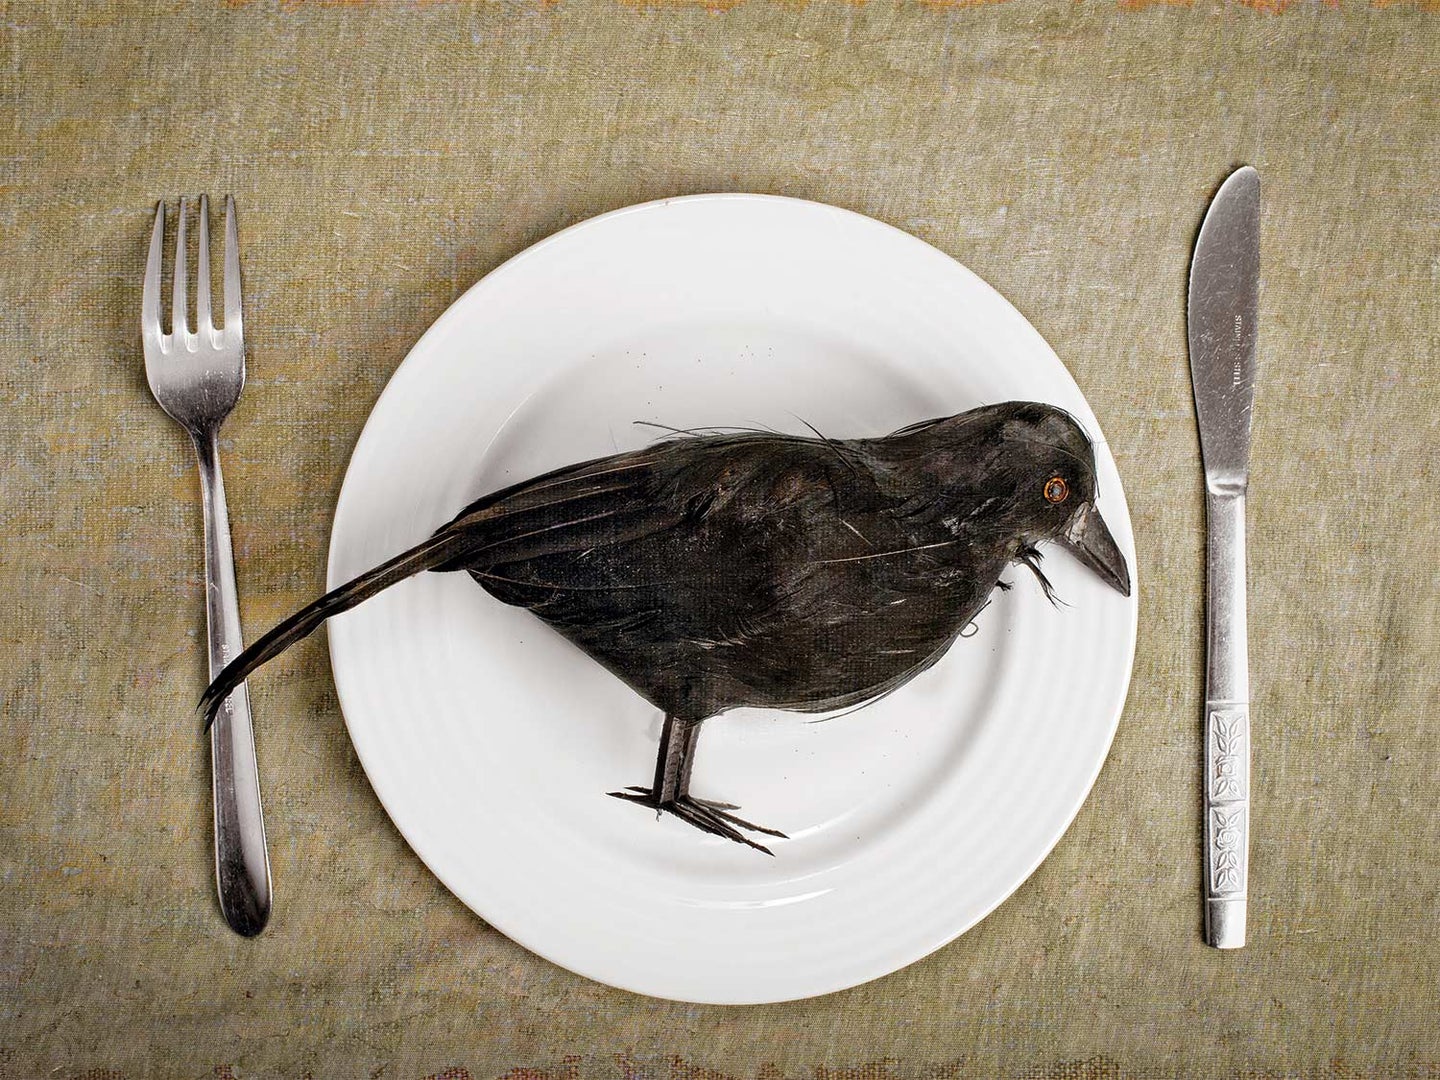 A crow on a plate.